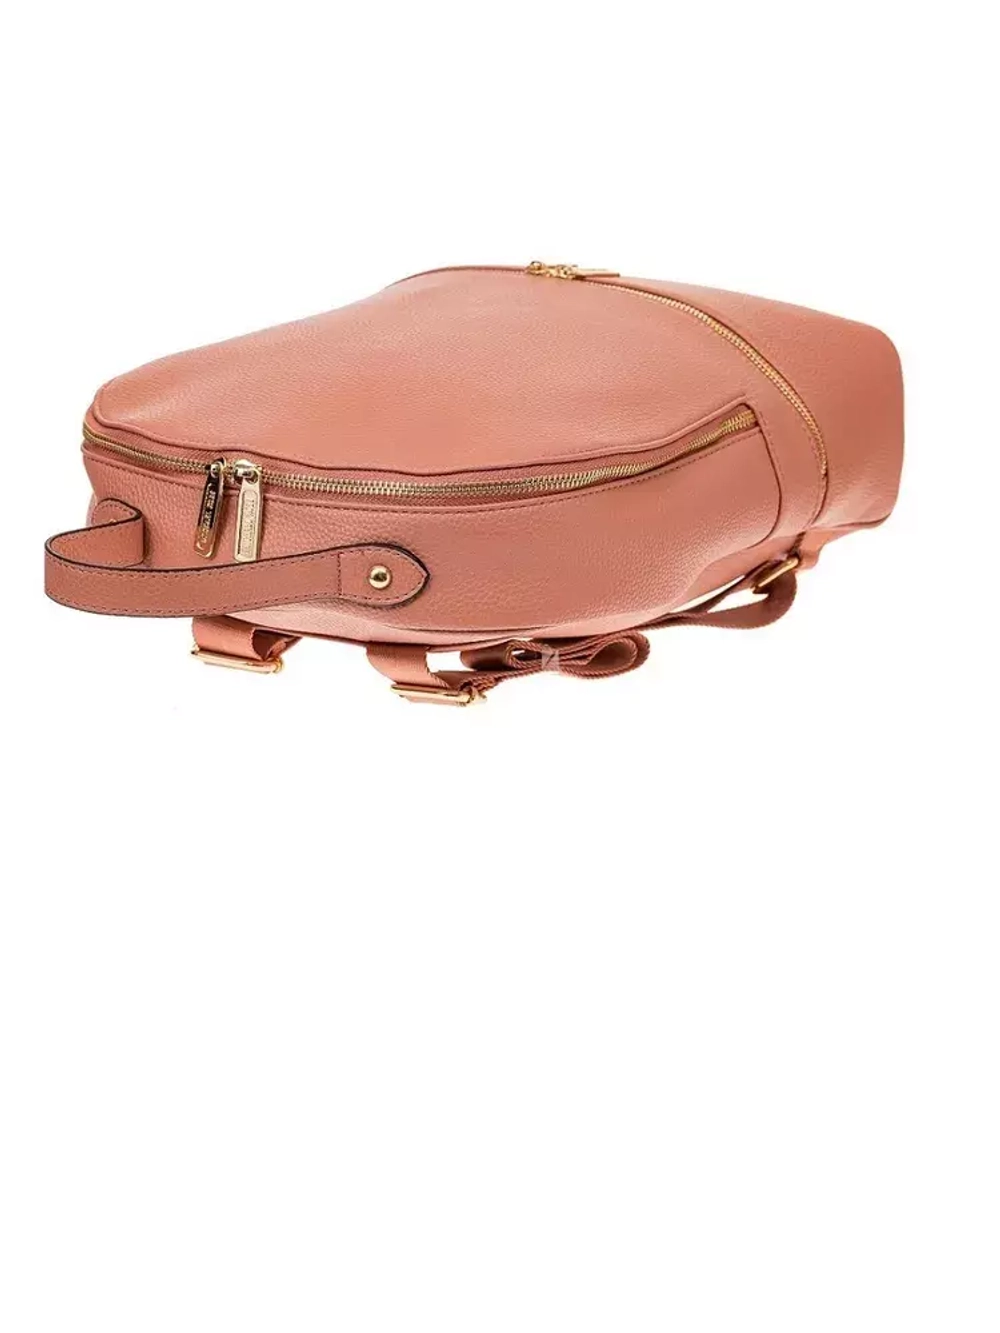 Рюкзак женский цвета розовой пудры